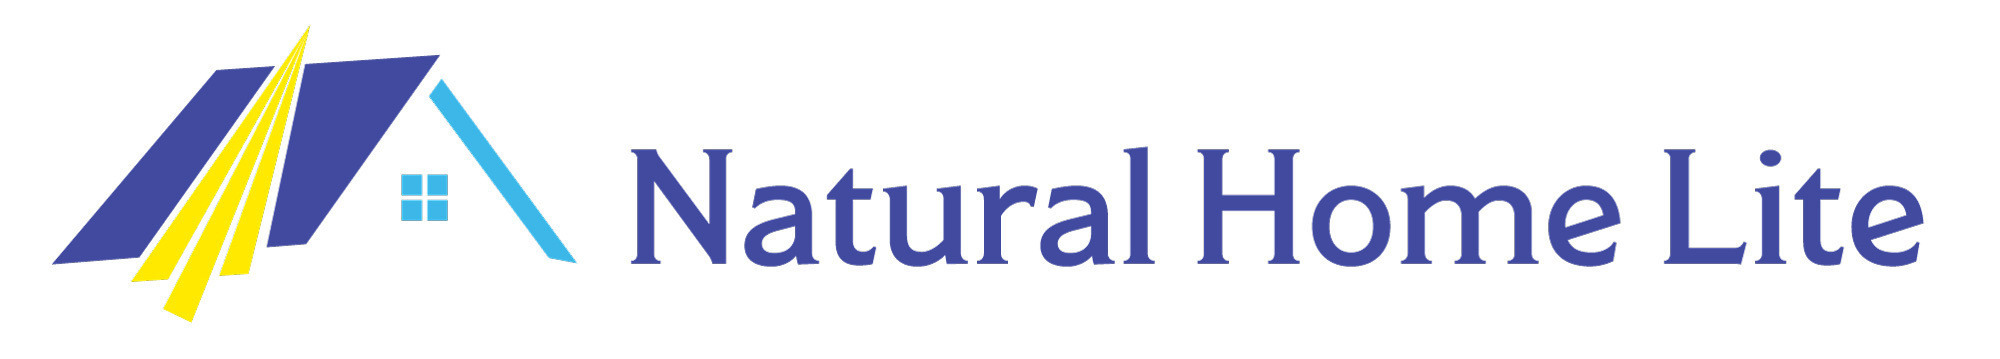 Natural Home Lite - Piedmont Triad logo